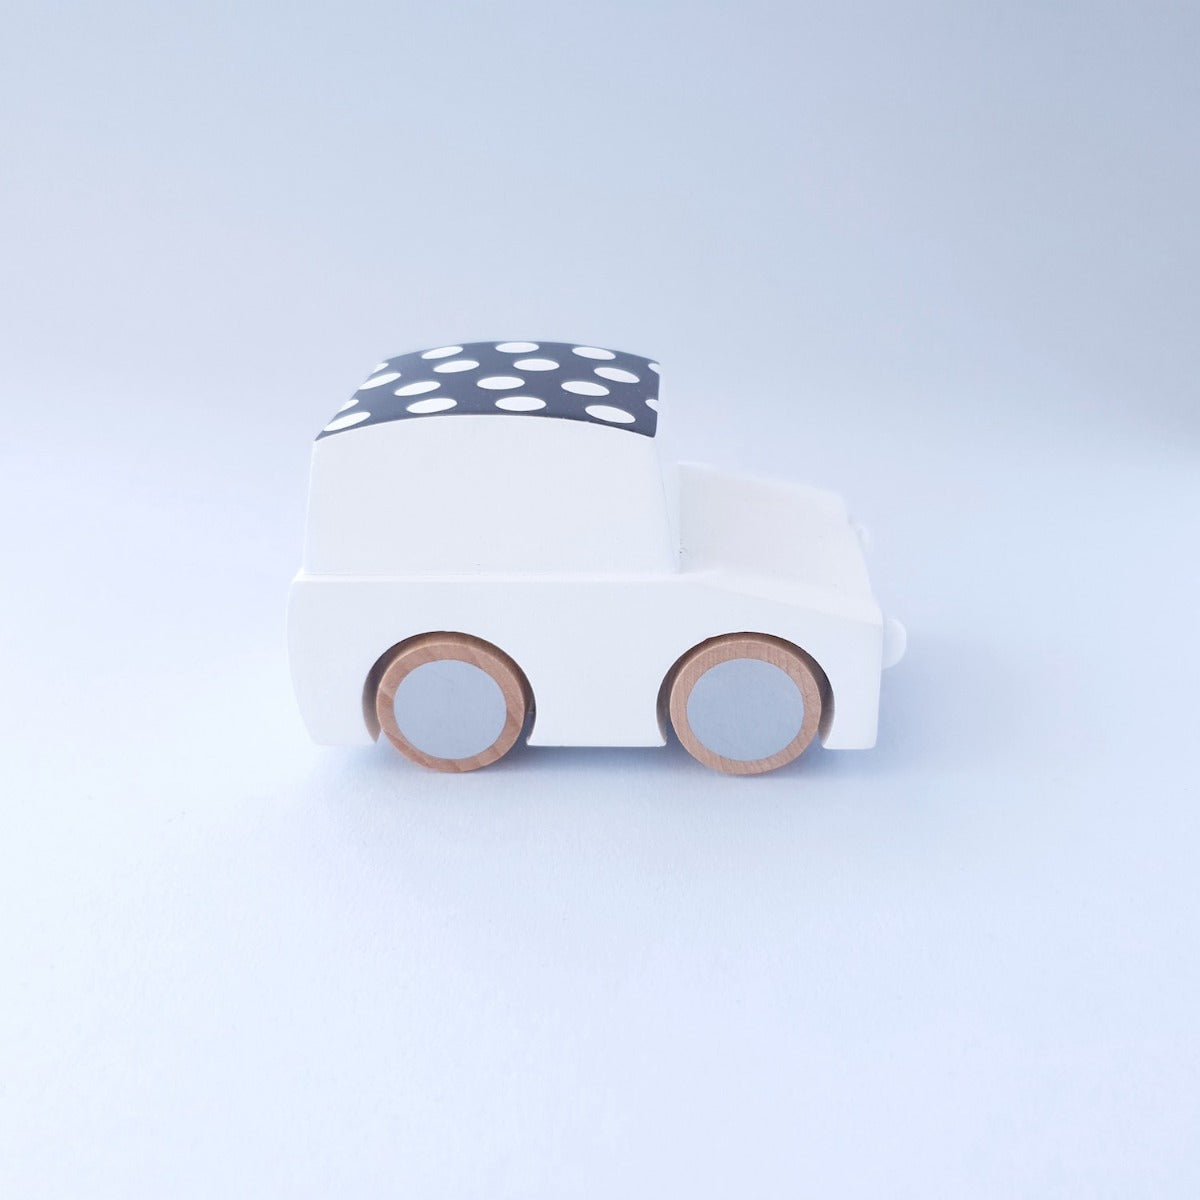 Kiko+ & GG* Wooden Toy Car - White Dots